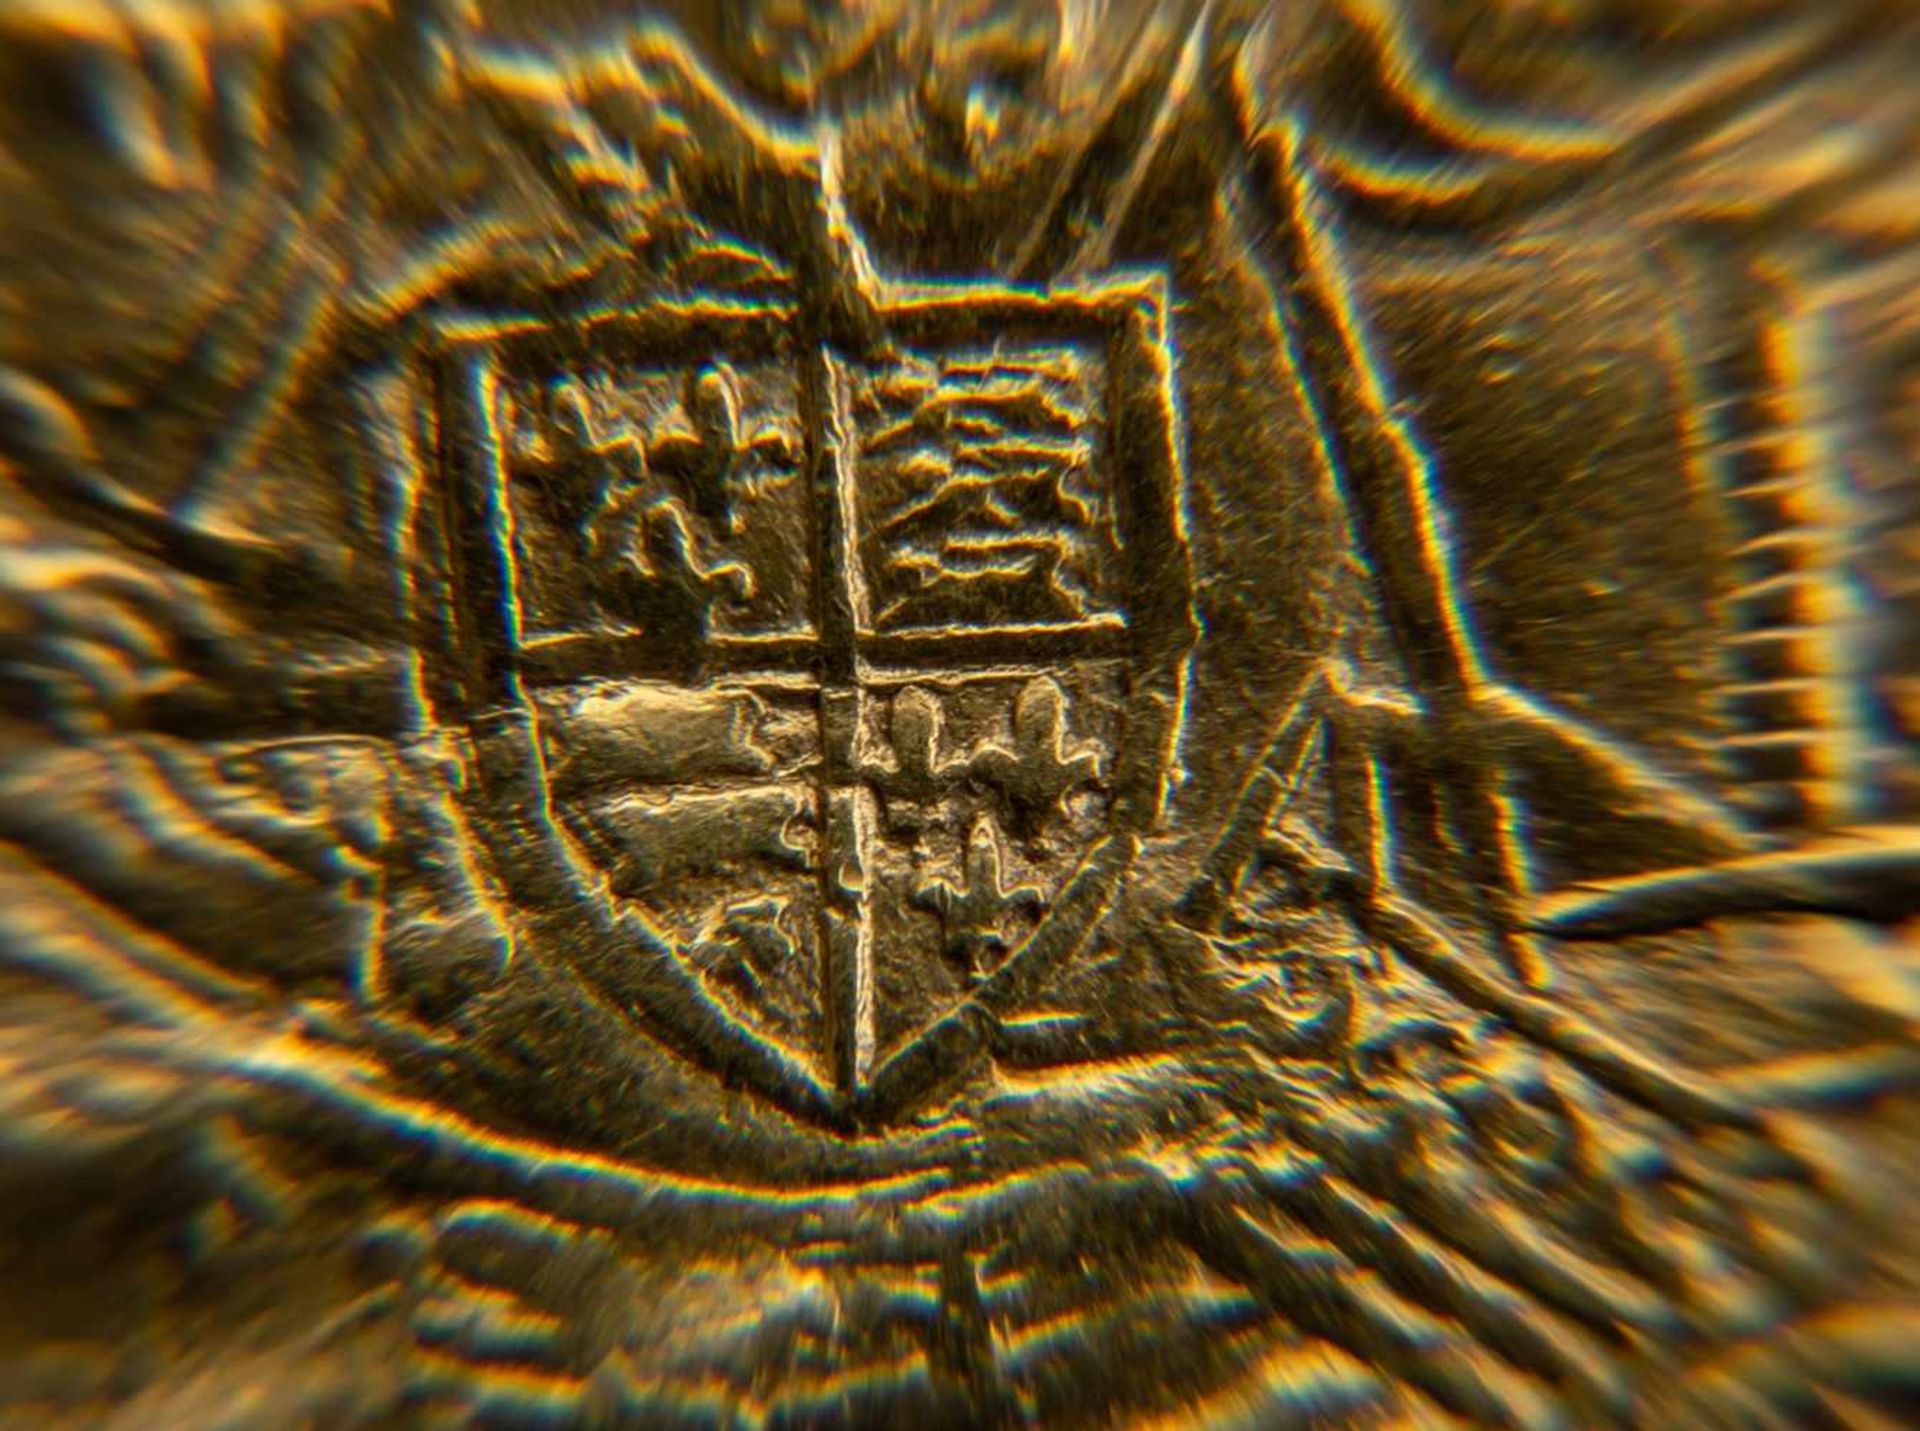 GOLD RYAL / ROSE NOBLE - Goldmünze. England 15. - 17. Jhd., vorderseitig König mit Schwert, Schild & - Bild 5 aus 15